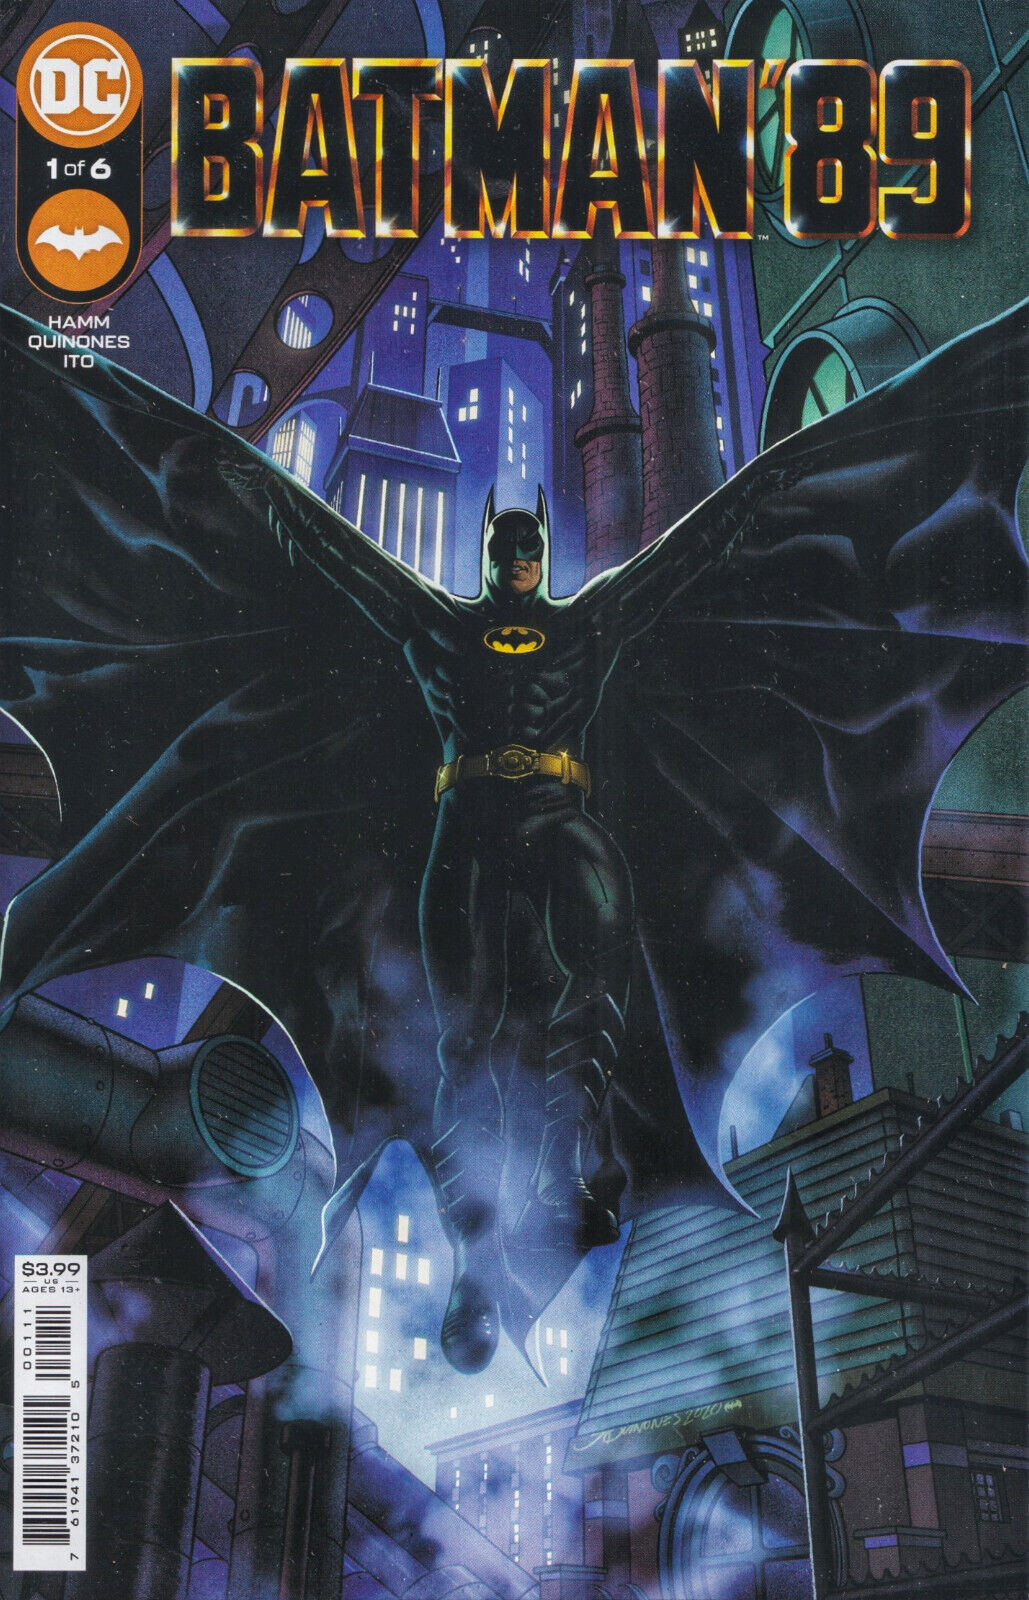 BATMAN \'89 #1 (QUINONES MAIN COVER)(2021) COMIC BOOK ~ DC Comics ~ NM